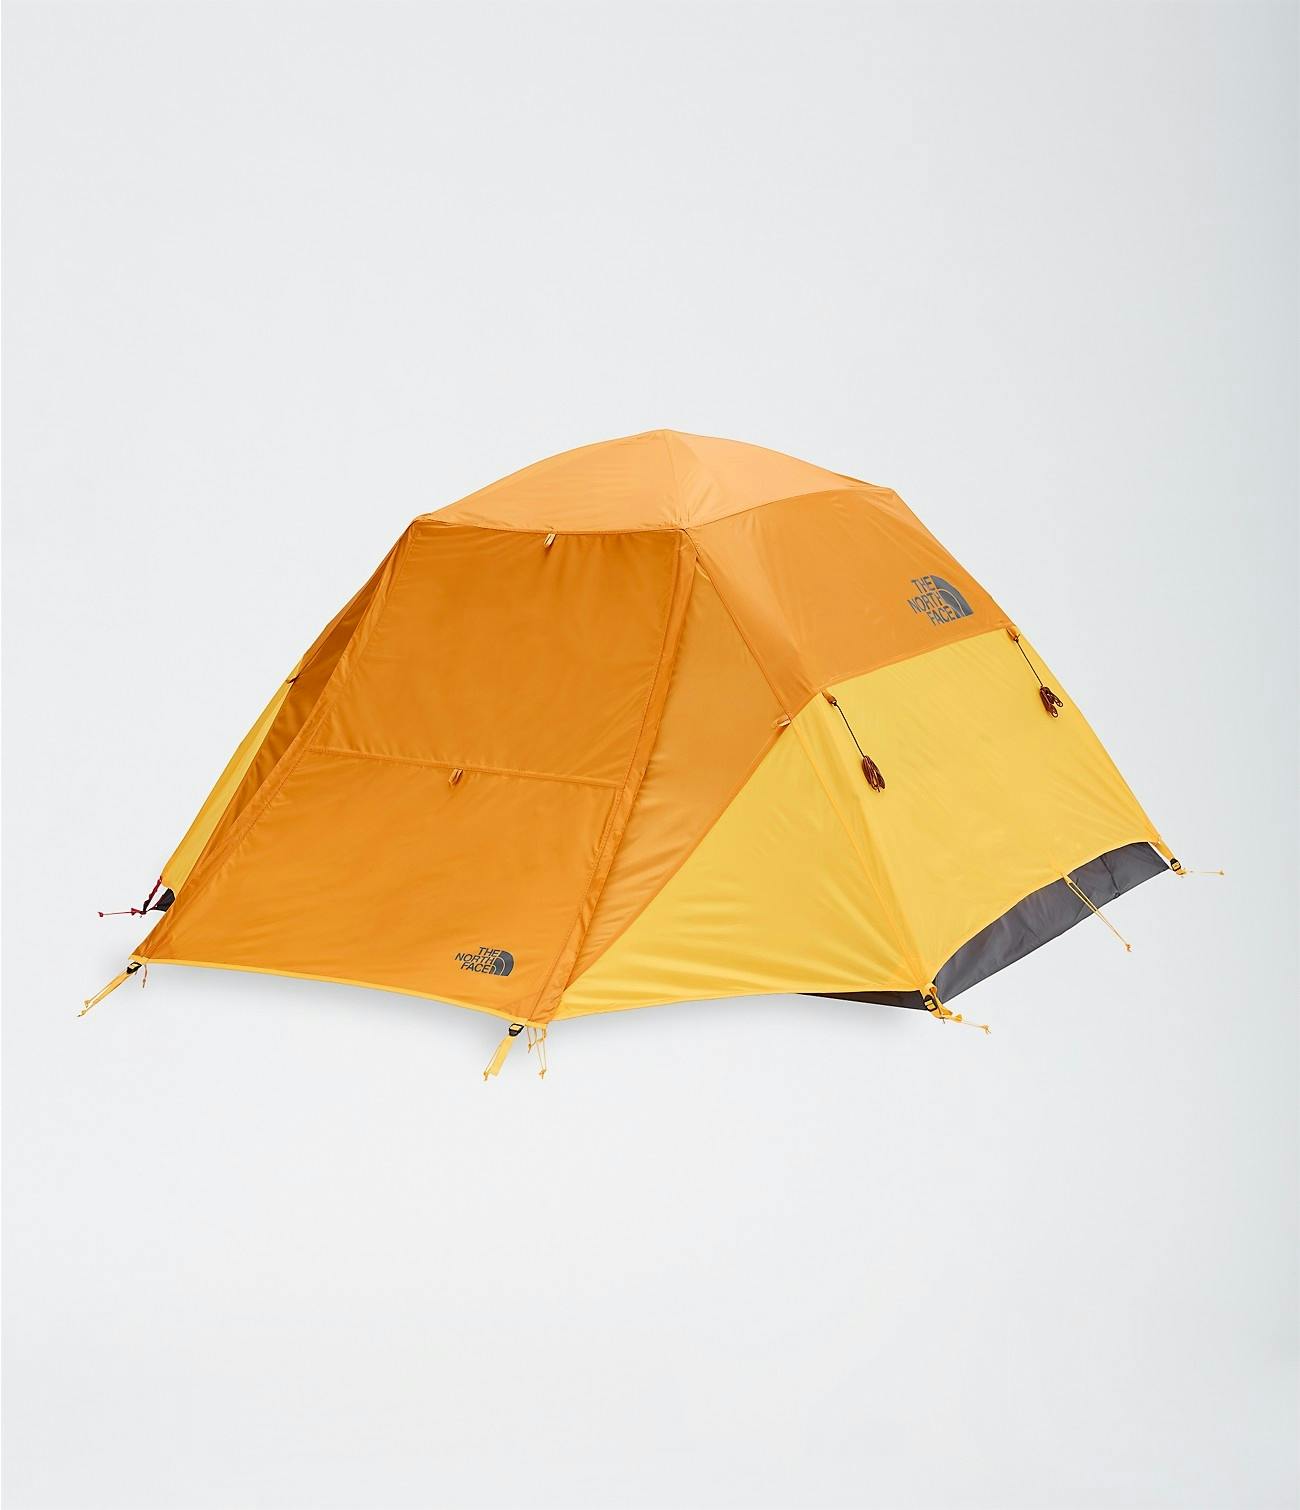 The North Face Stormbreak 3 Tent ·Golden Oak/Pavement